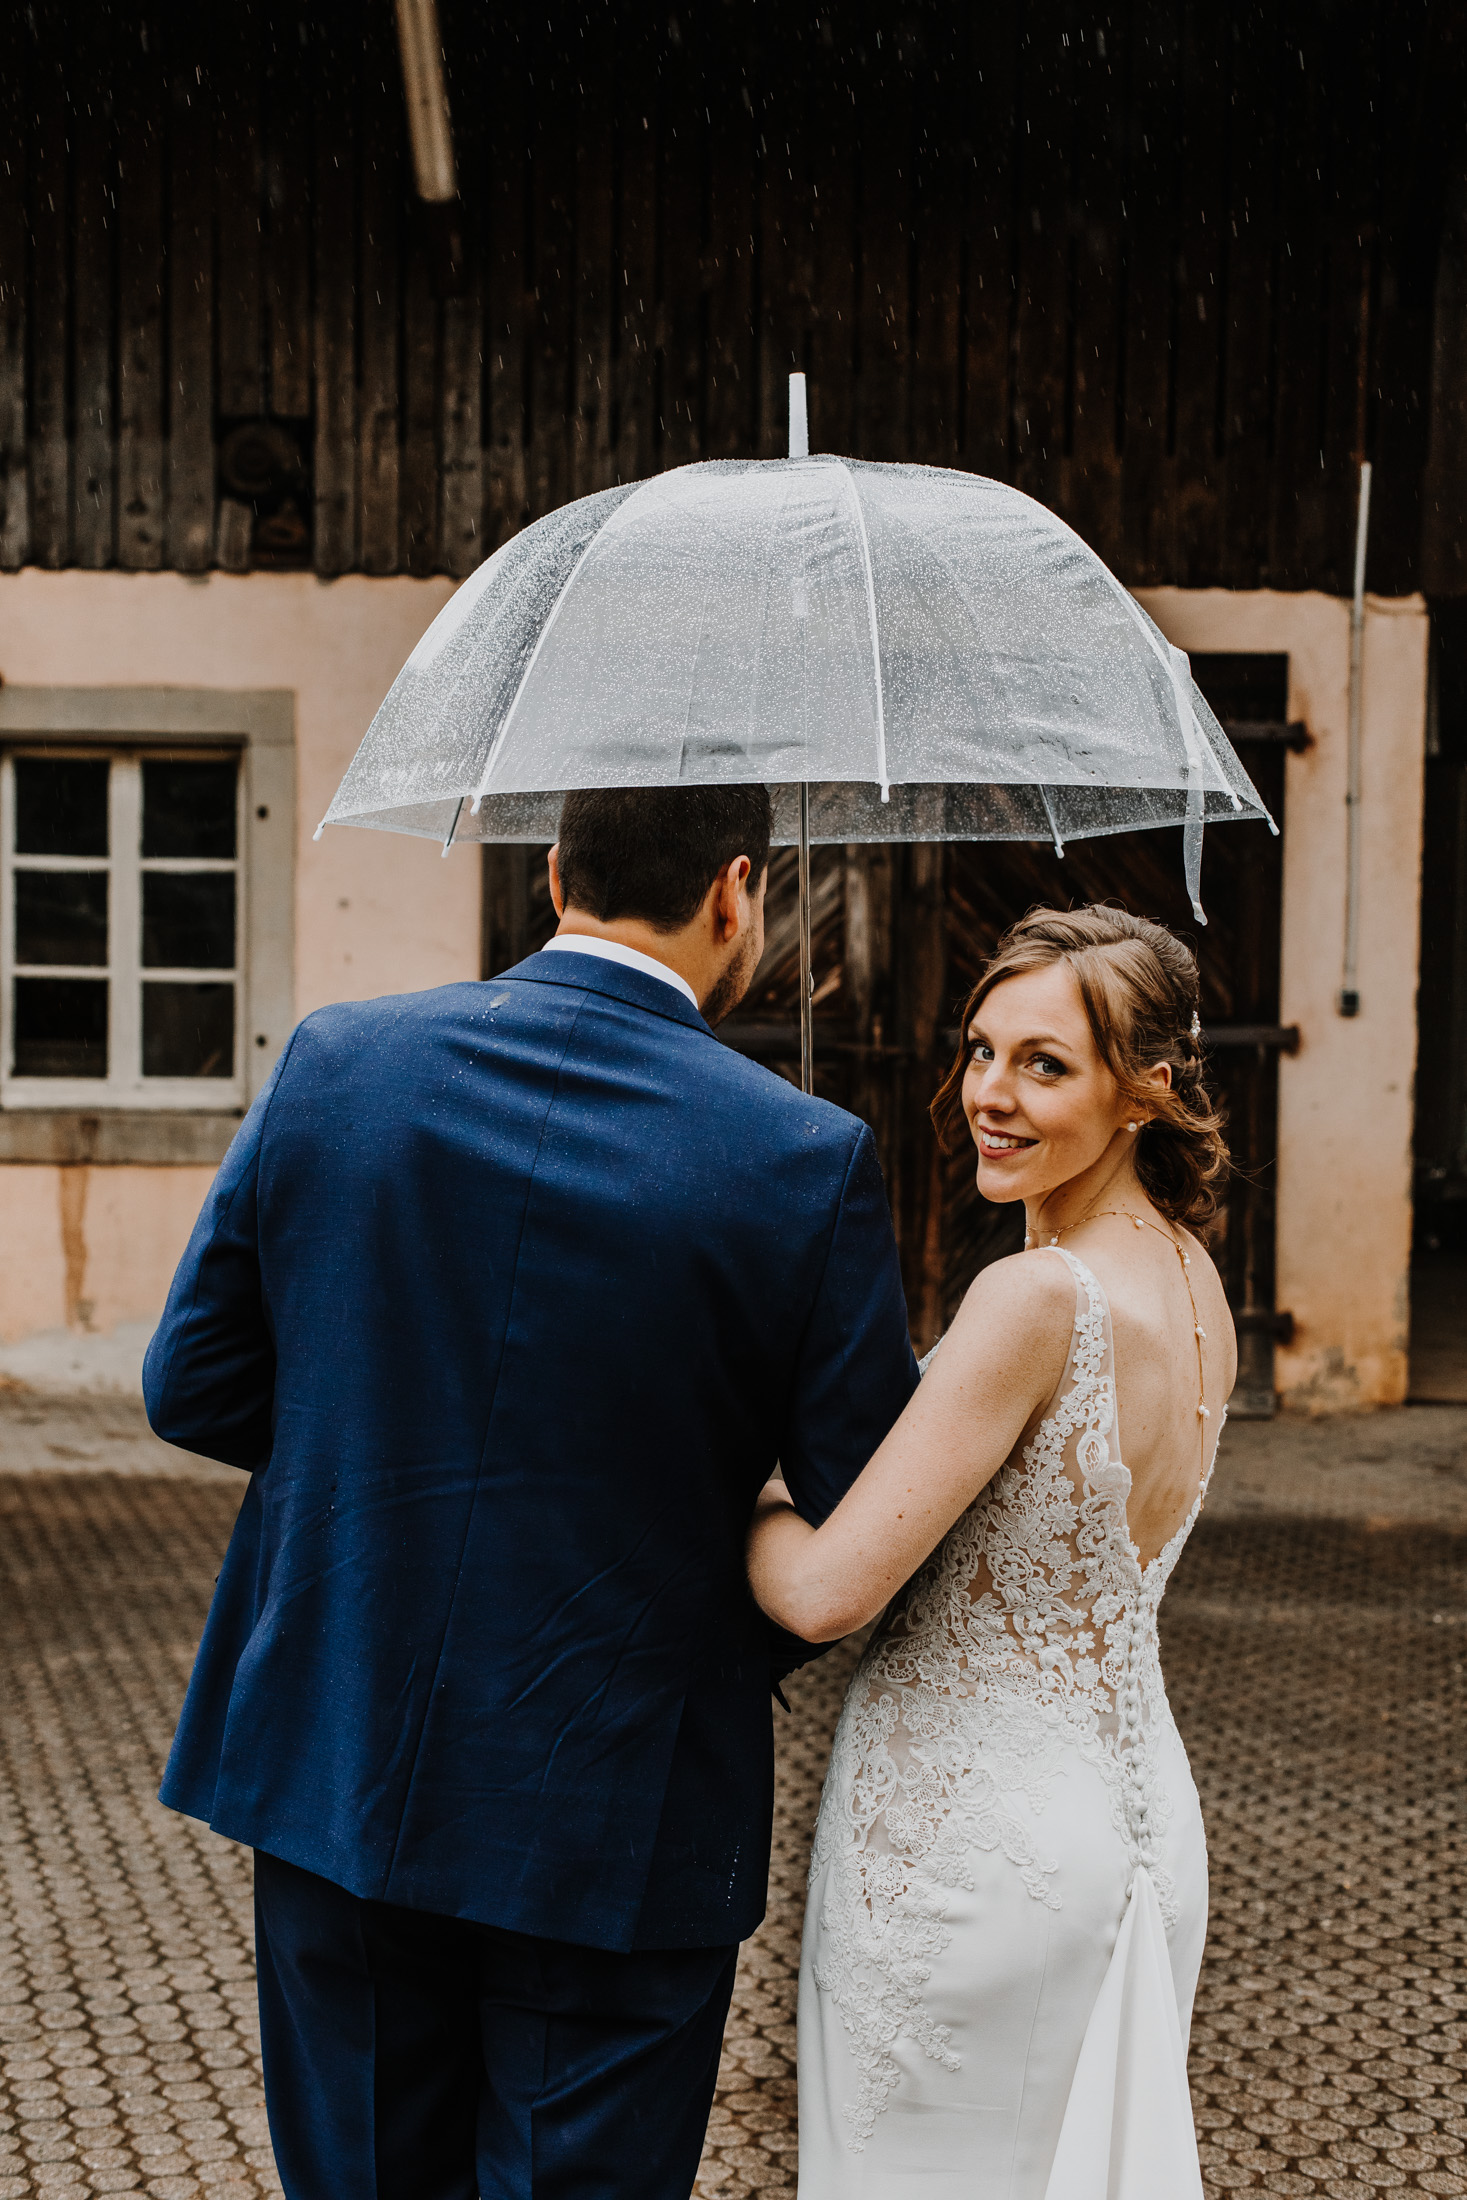 les mariés marchent sous la pluie, dans une ancienne cour, sous un parapluie transparent